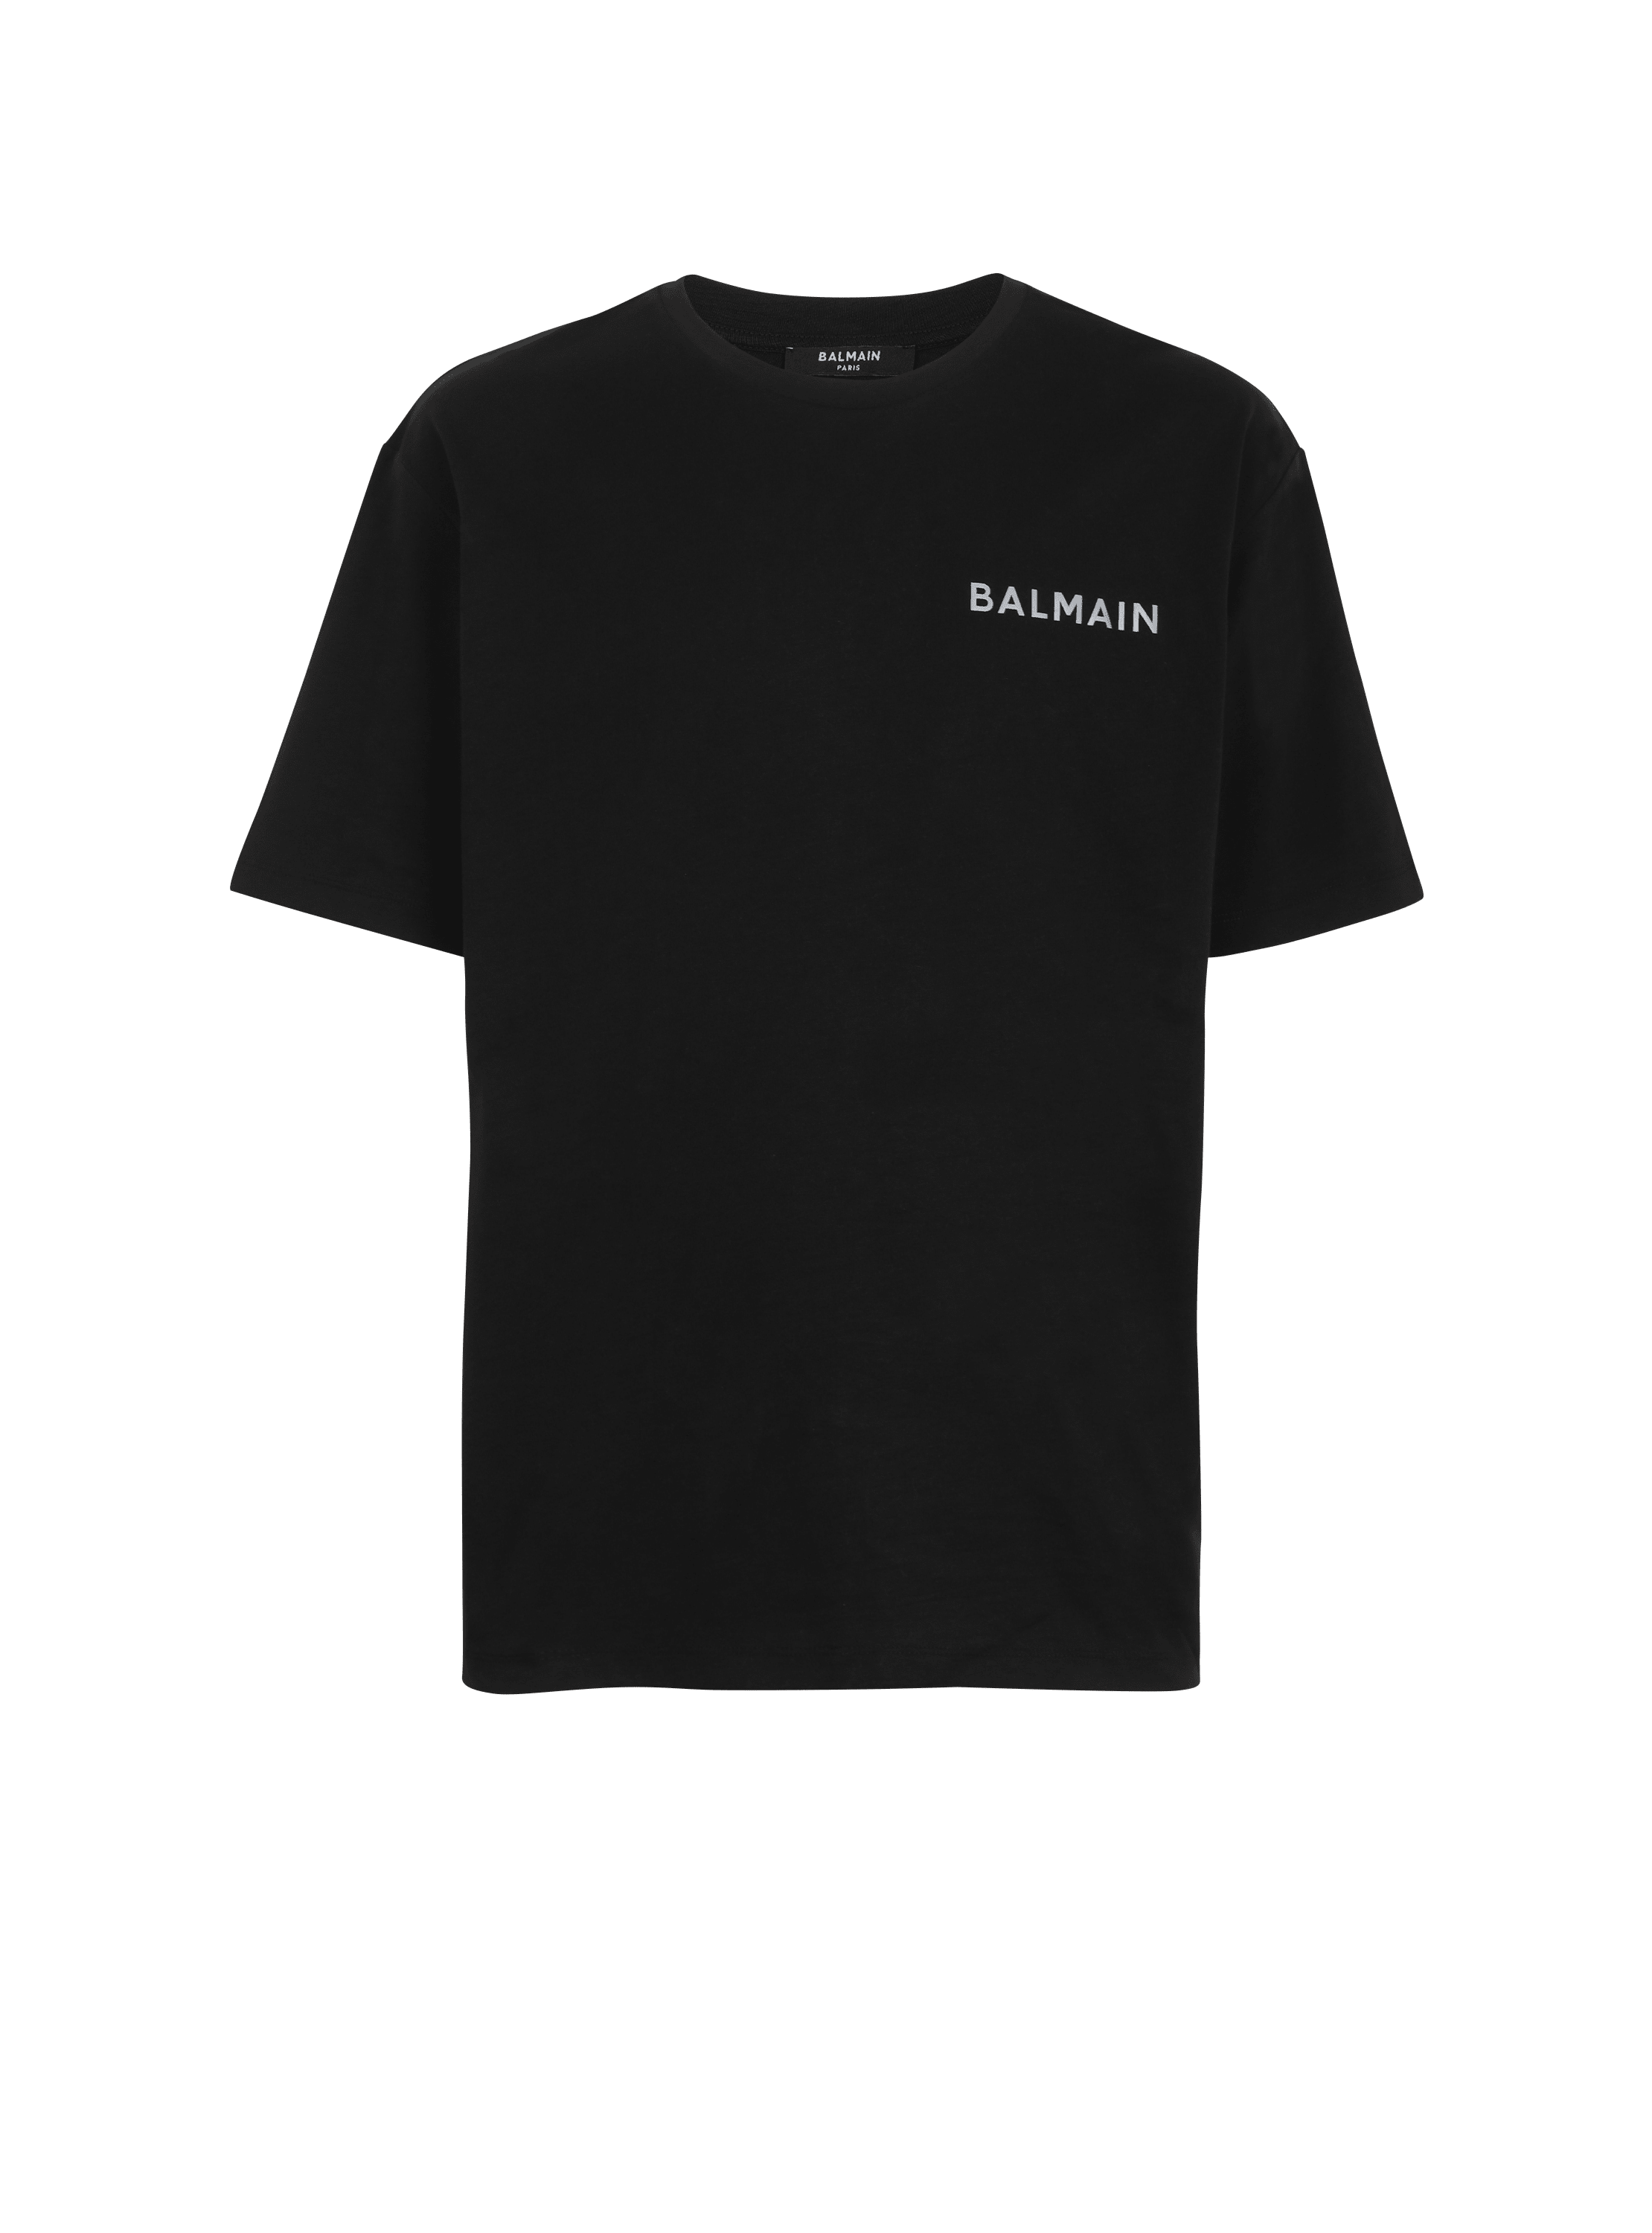 Oversized cotton T-shirt with small Balmain Paris logo, black, hi-res